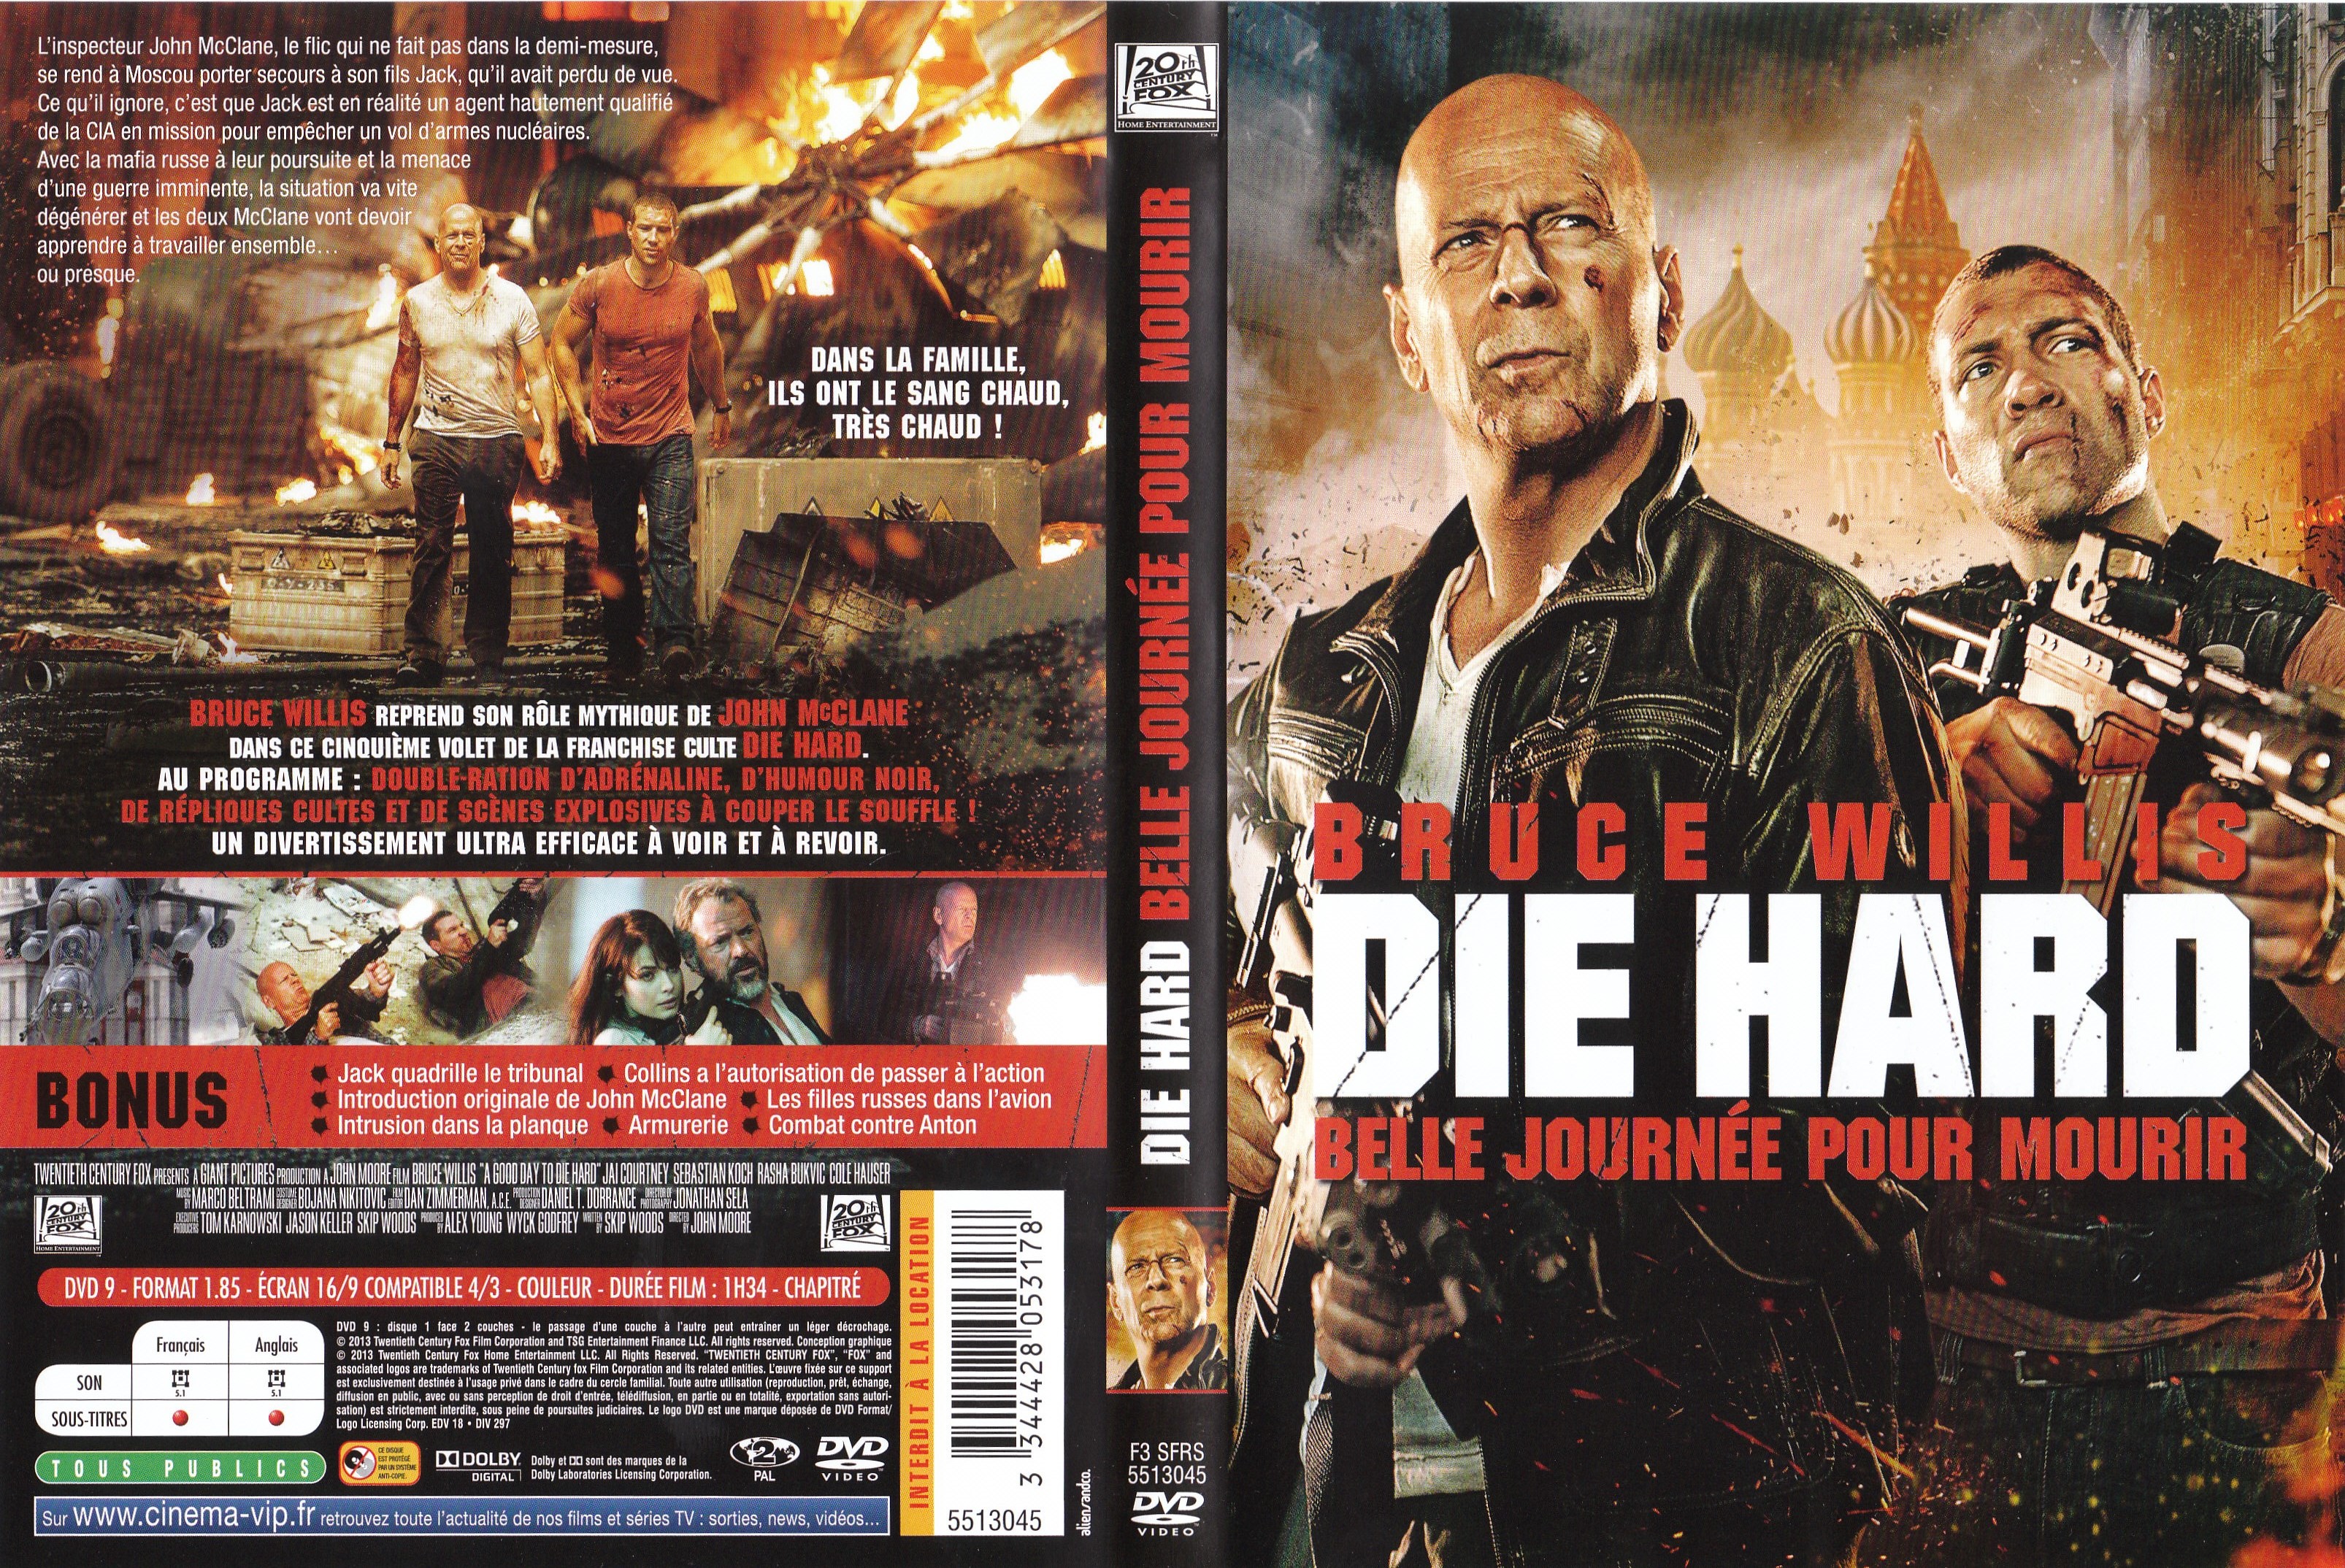 Jaquette DVD Die Hard Belle journe pour mourir